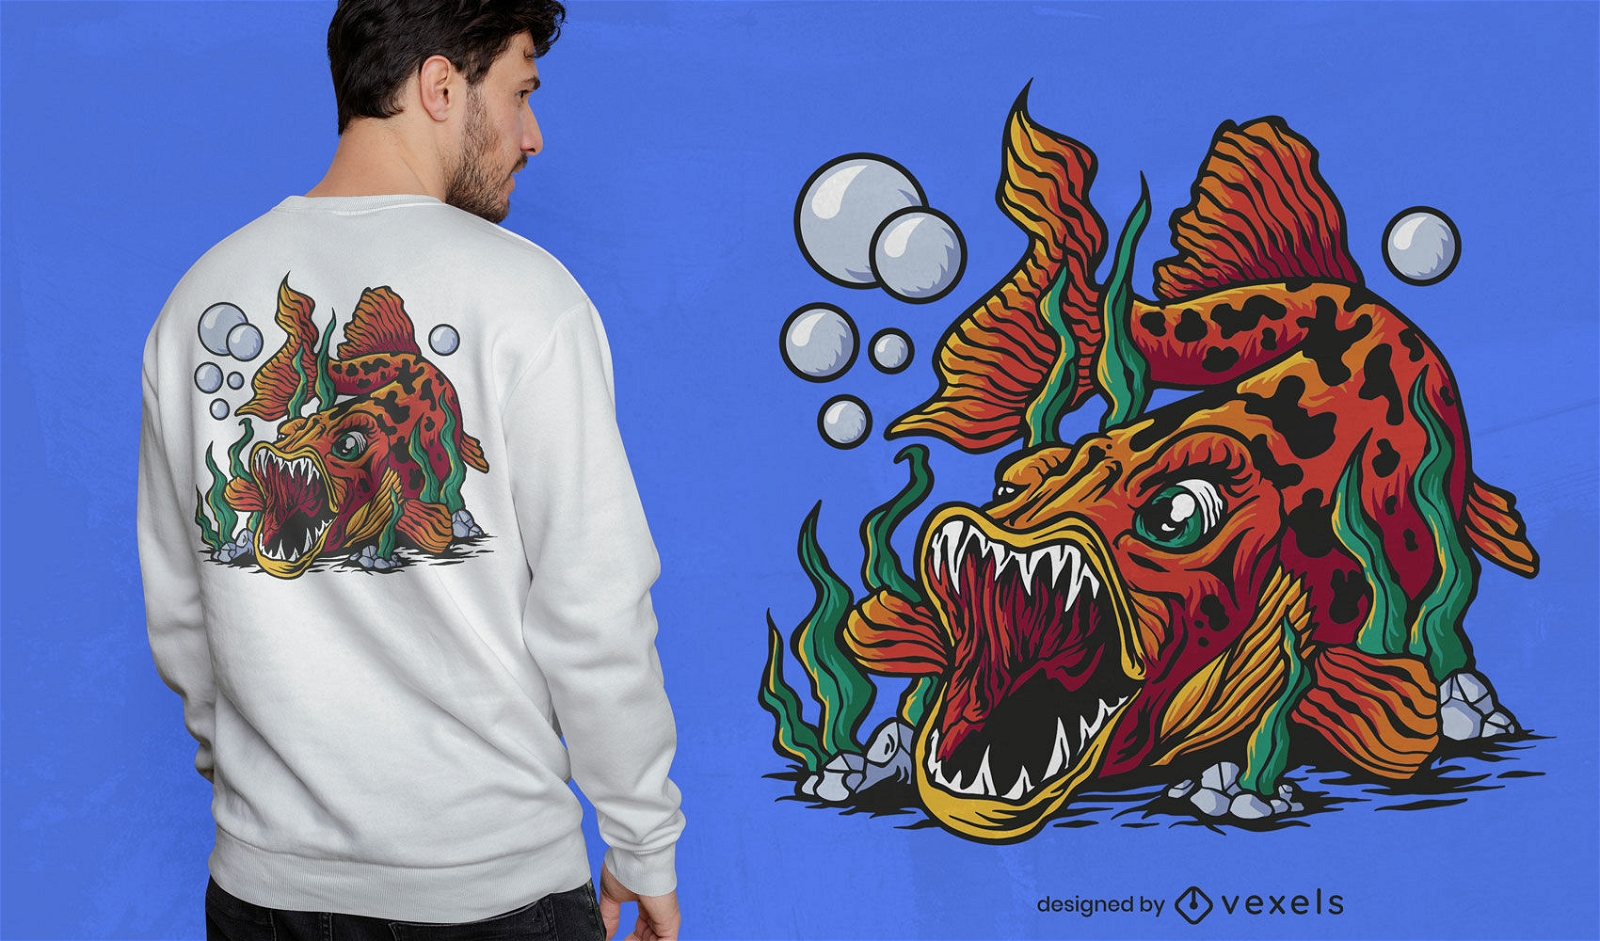 Fish with fangs cartoon t-shirt design